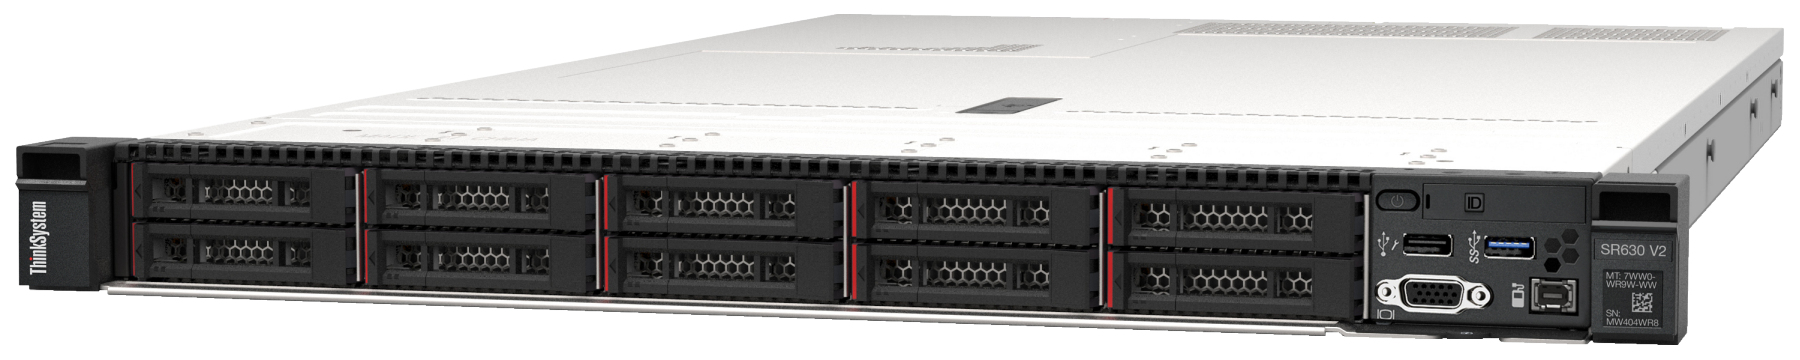 Сервер Lenovo ThinkSystem SR630 V2 (7Z71A063EA). Фиксированная комплектация сервера